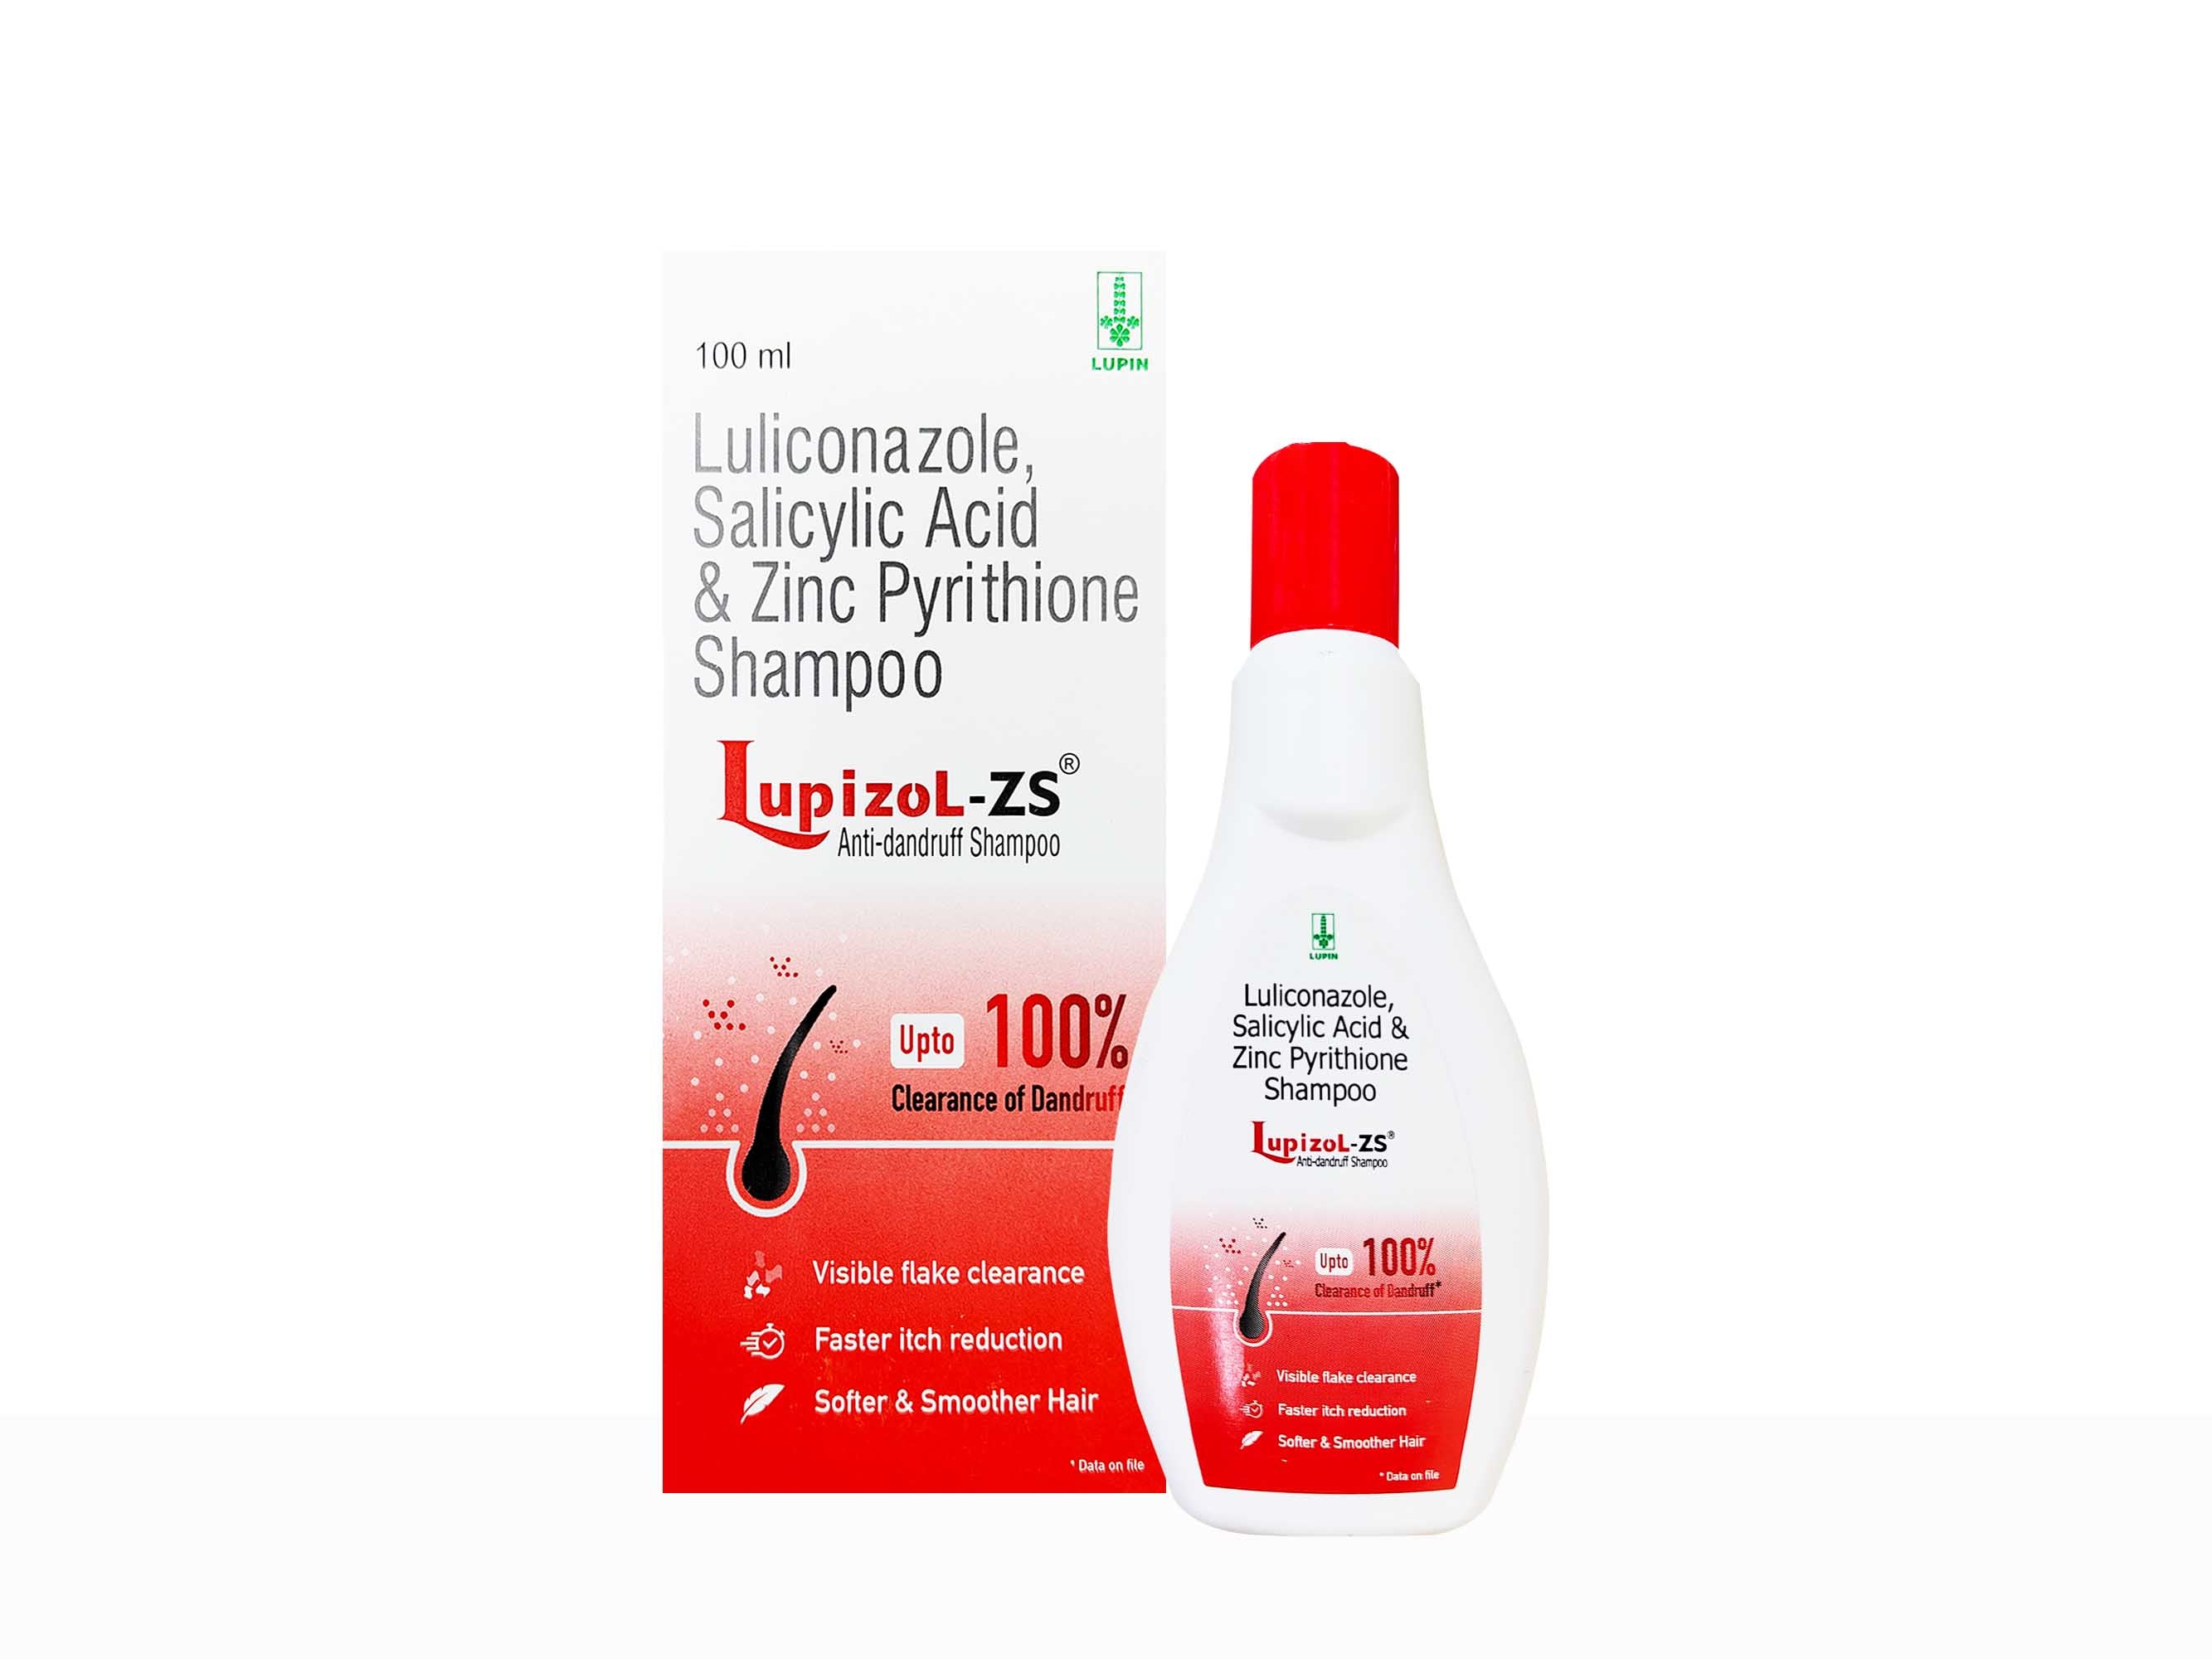 Lupizol-ZS Anti-Dandruff Shampoo